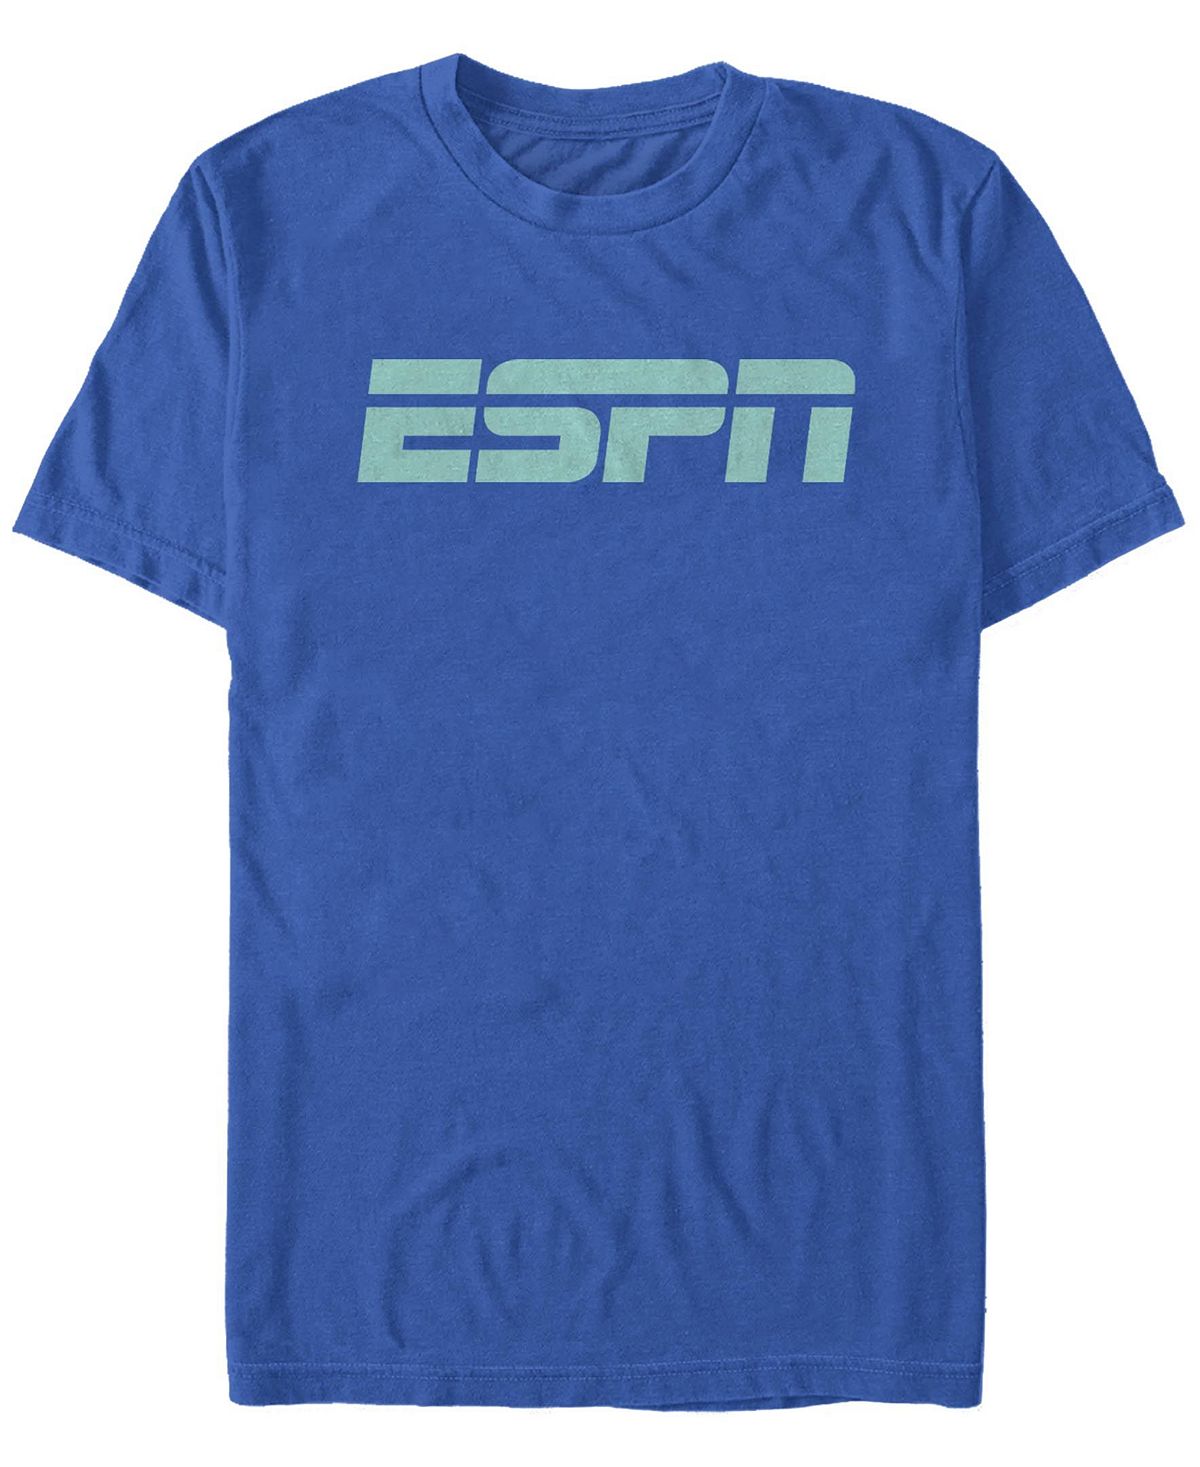 Мужская футболка с круглым вырезом и короткими рукавами с логотипом Fifth Sun мужская футболка для бега по пересеченной местности с логотипом и короткими рукавами fifth sun синий